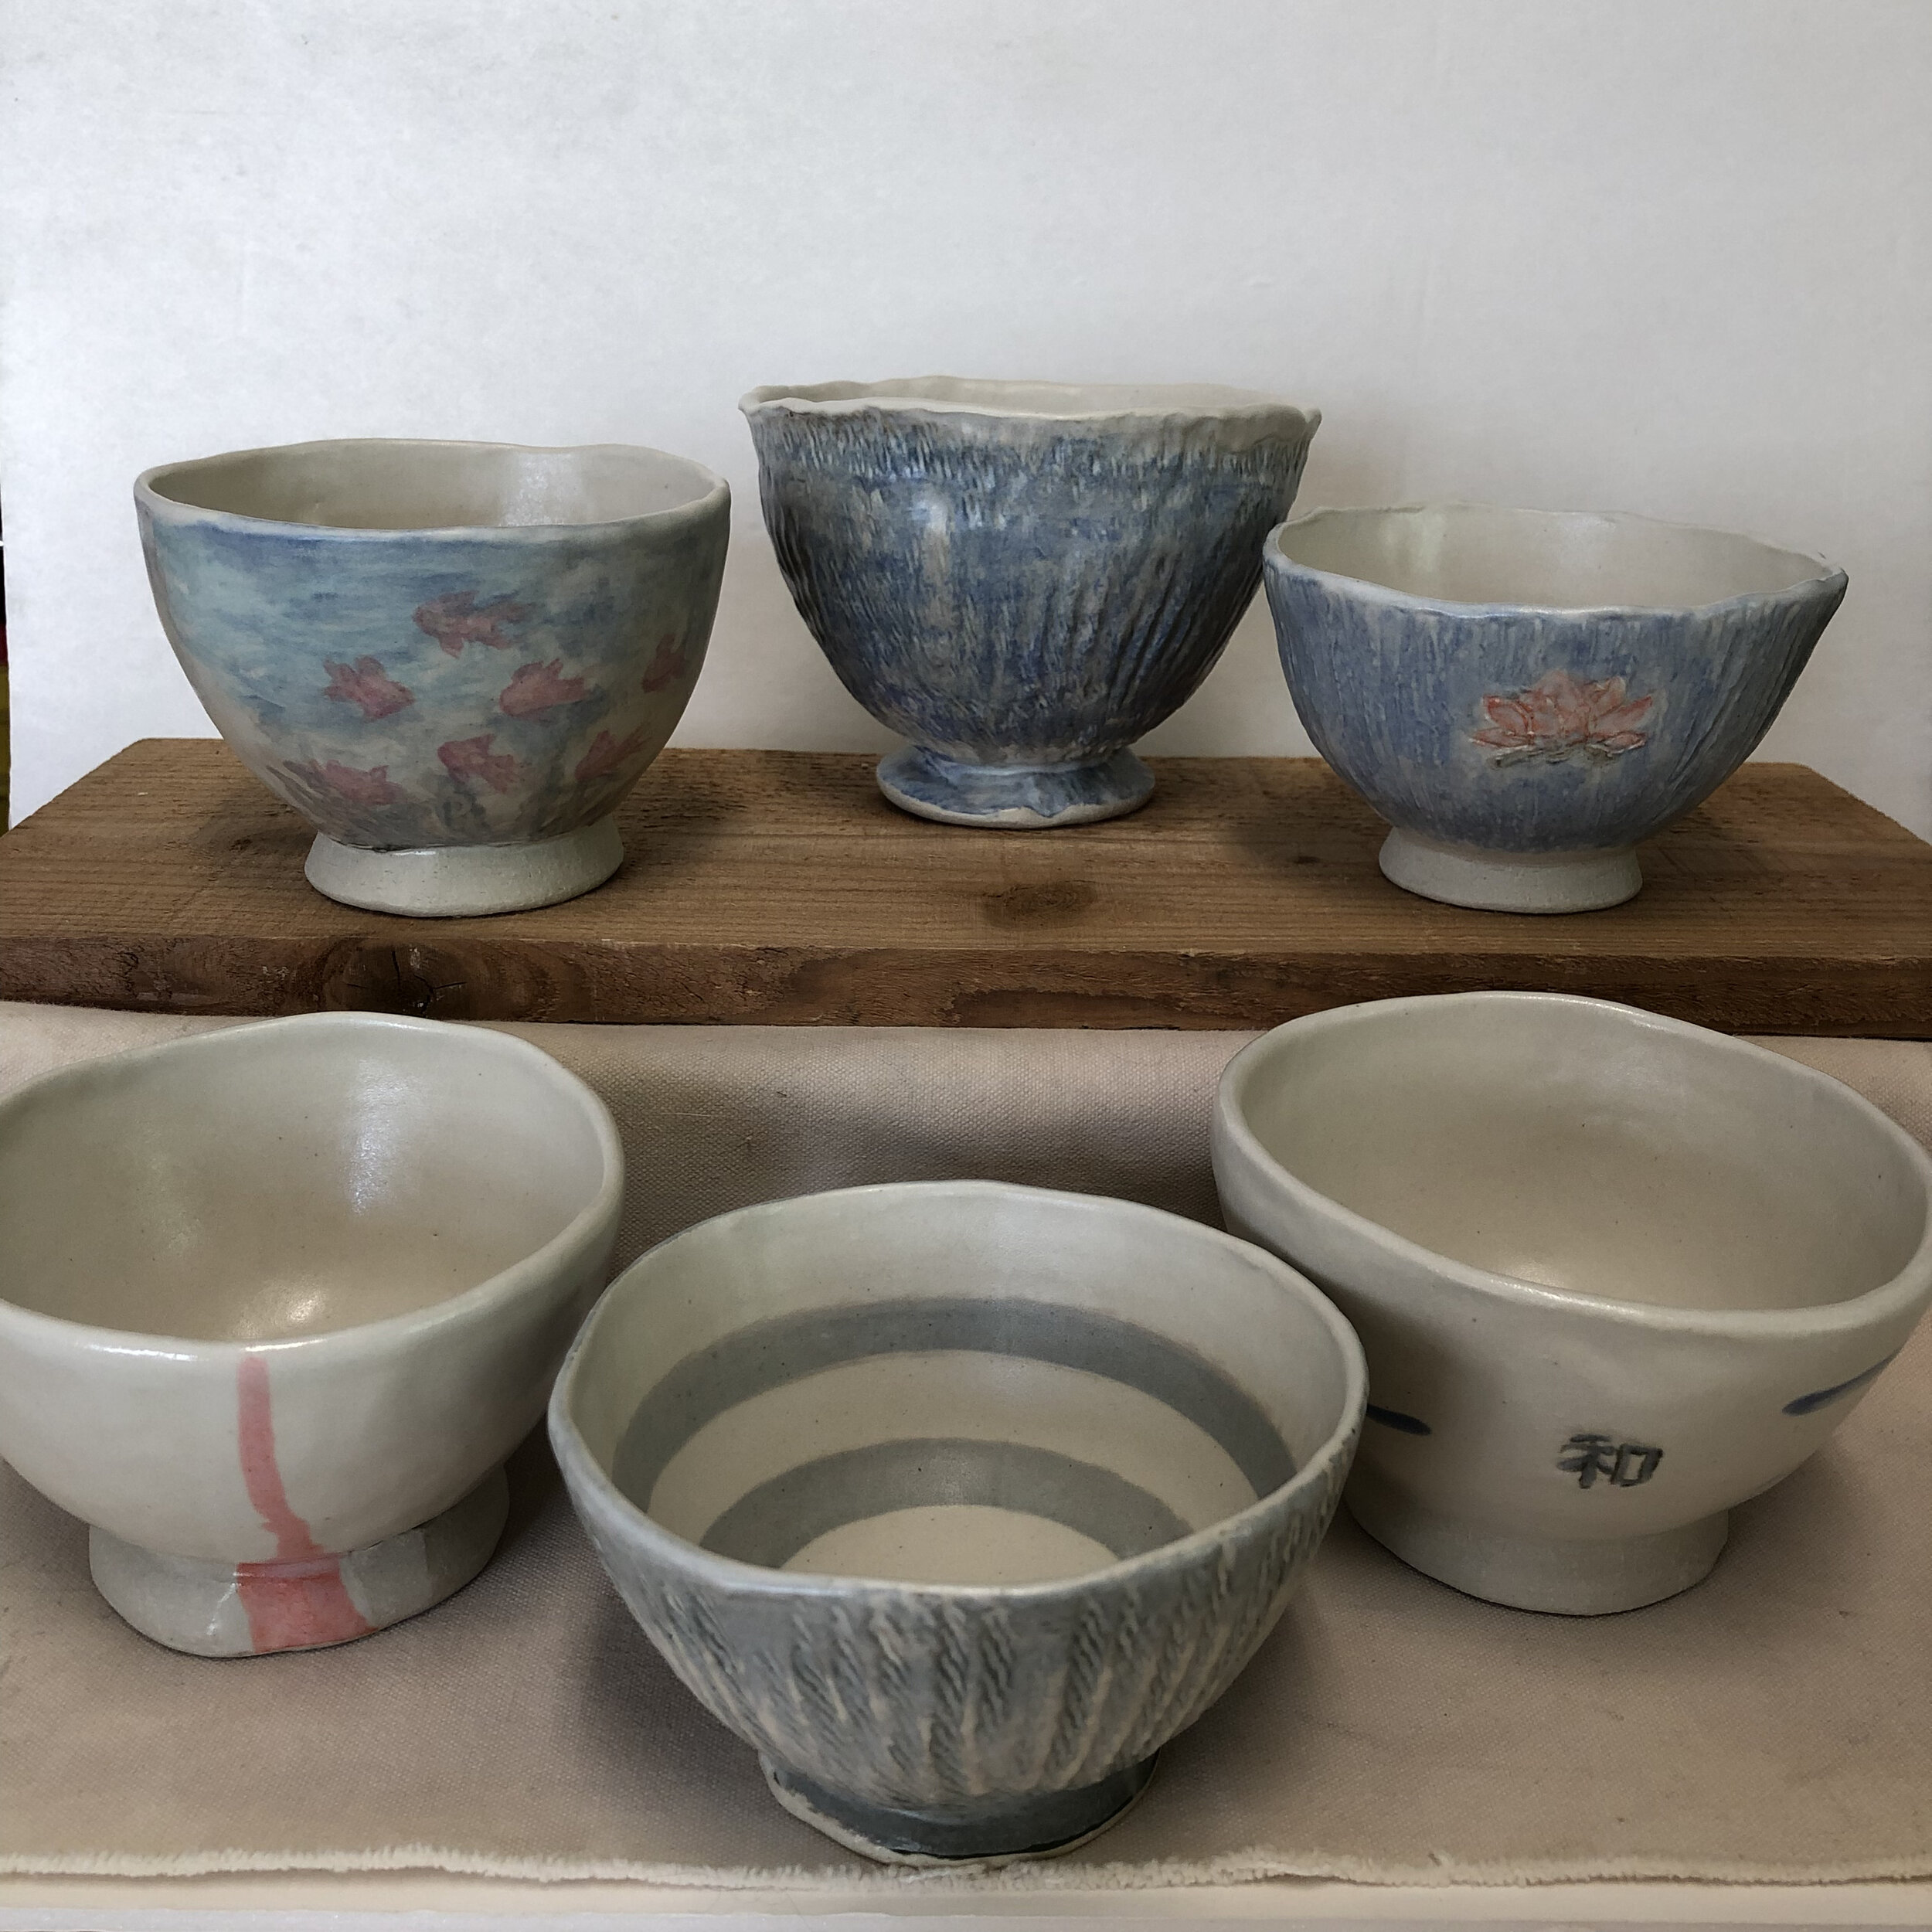 Finished tea bowls.